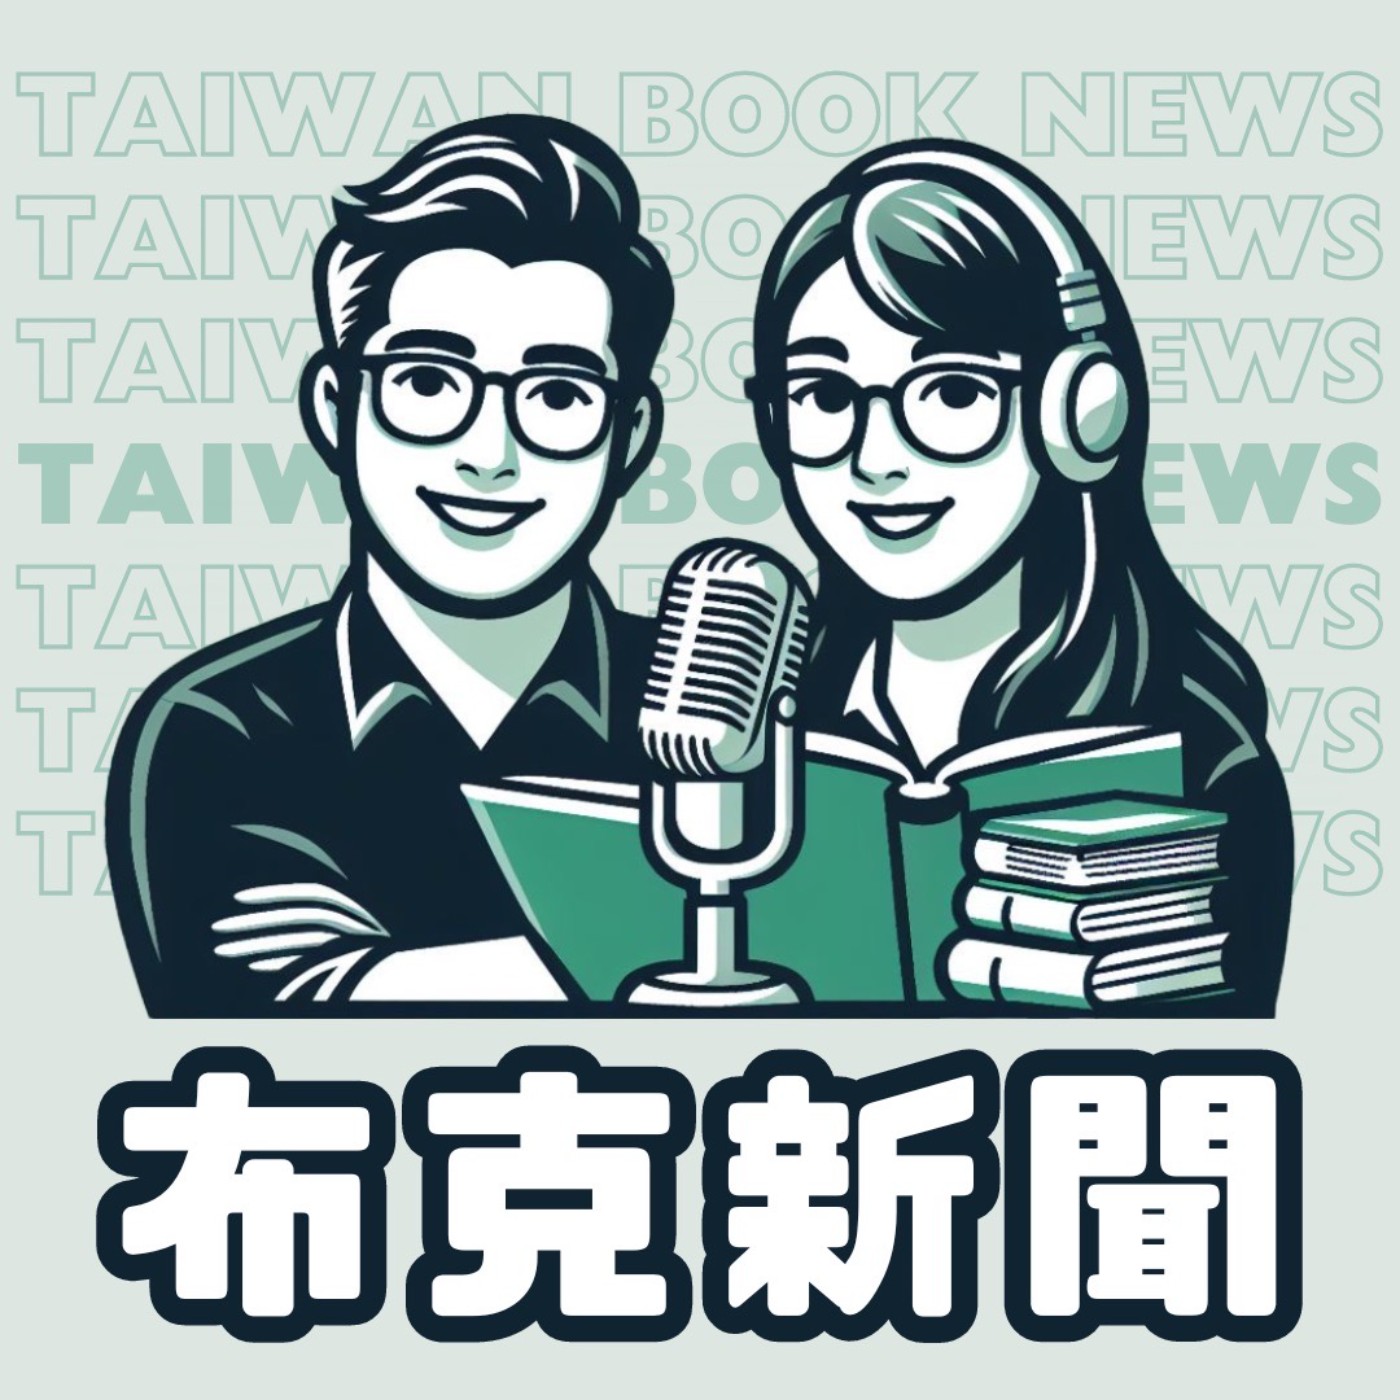 布克新聞 Taiwan Book News S5EP12：從「台灣」之名就開始的諧音魂